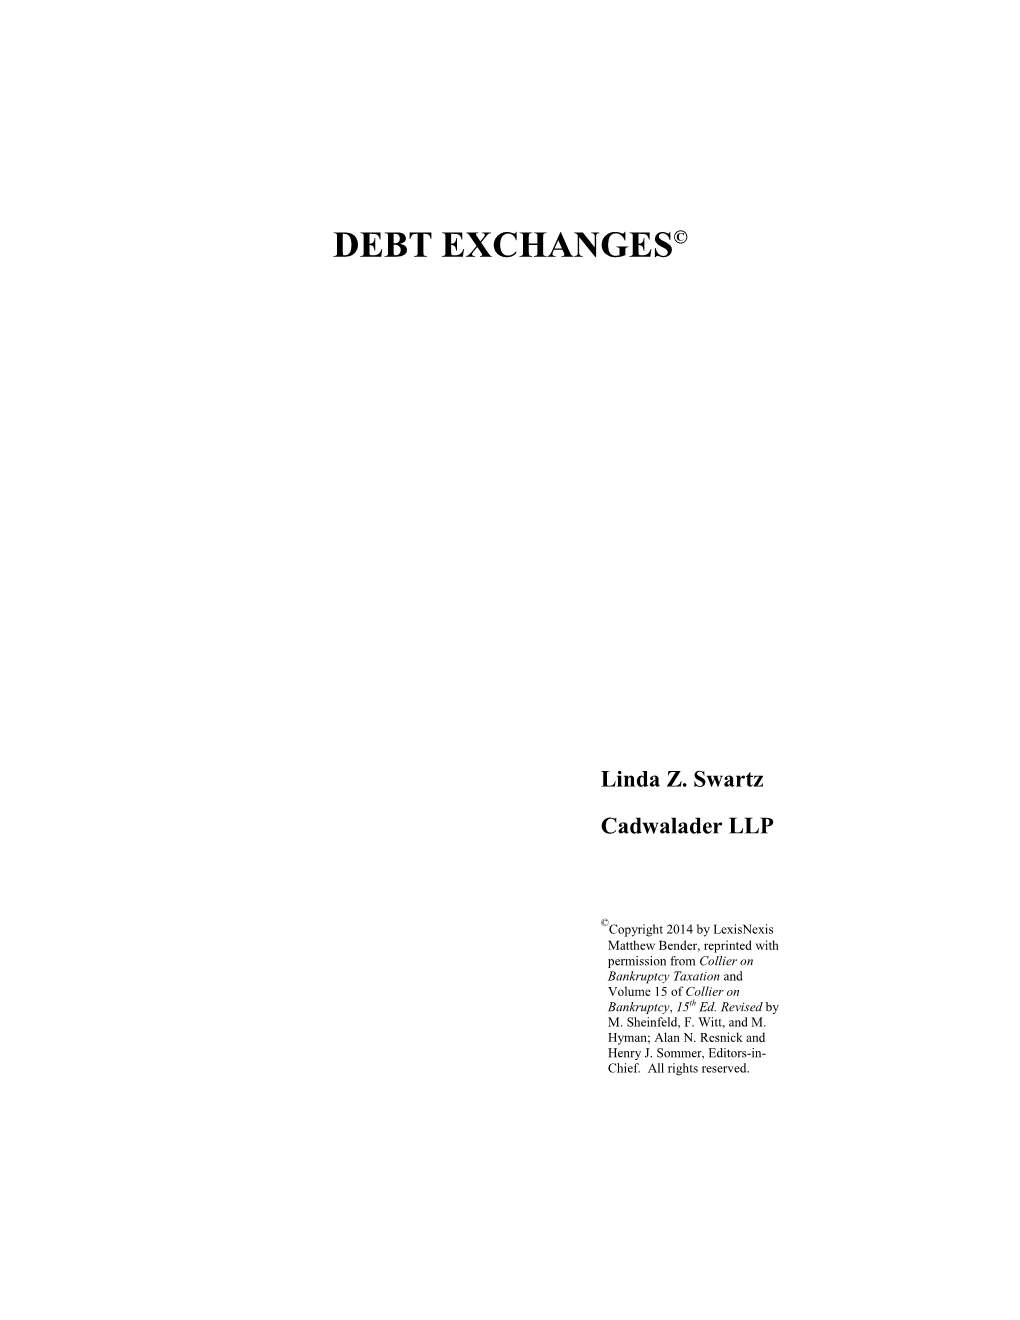 Debt Exchanges©